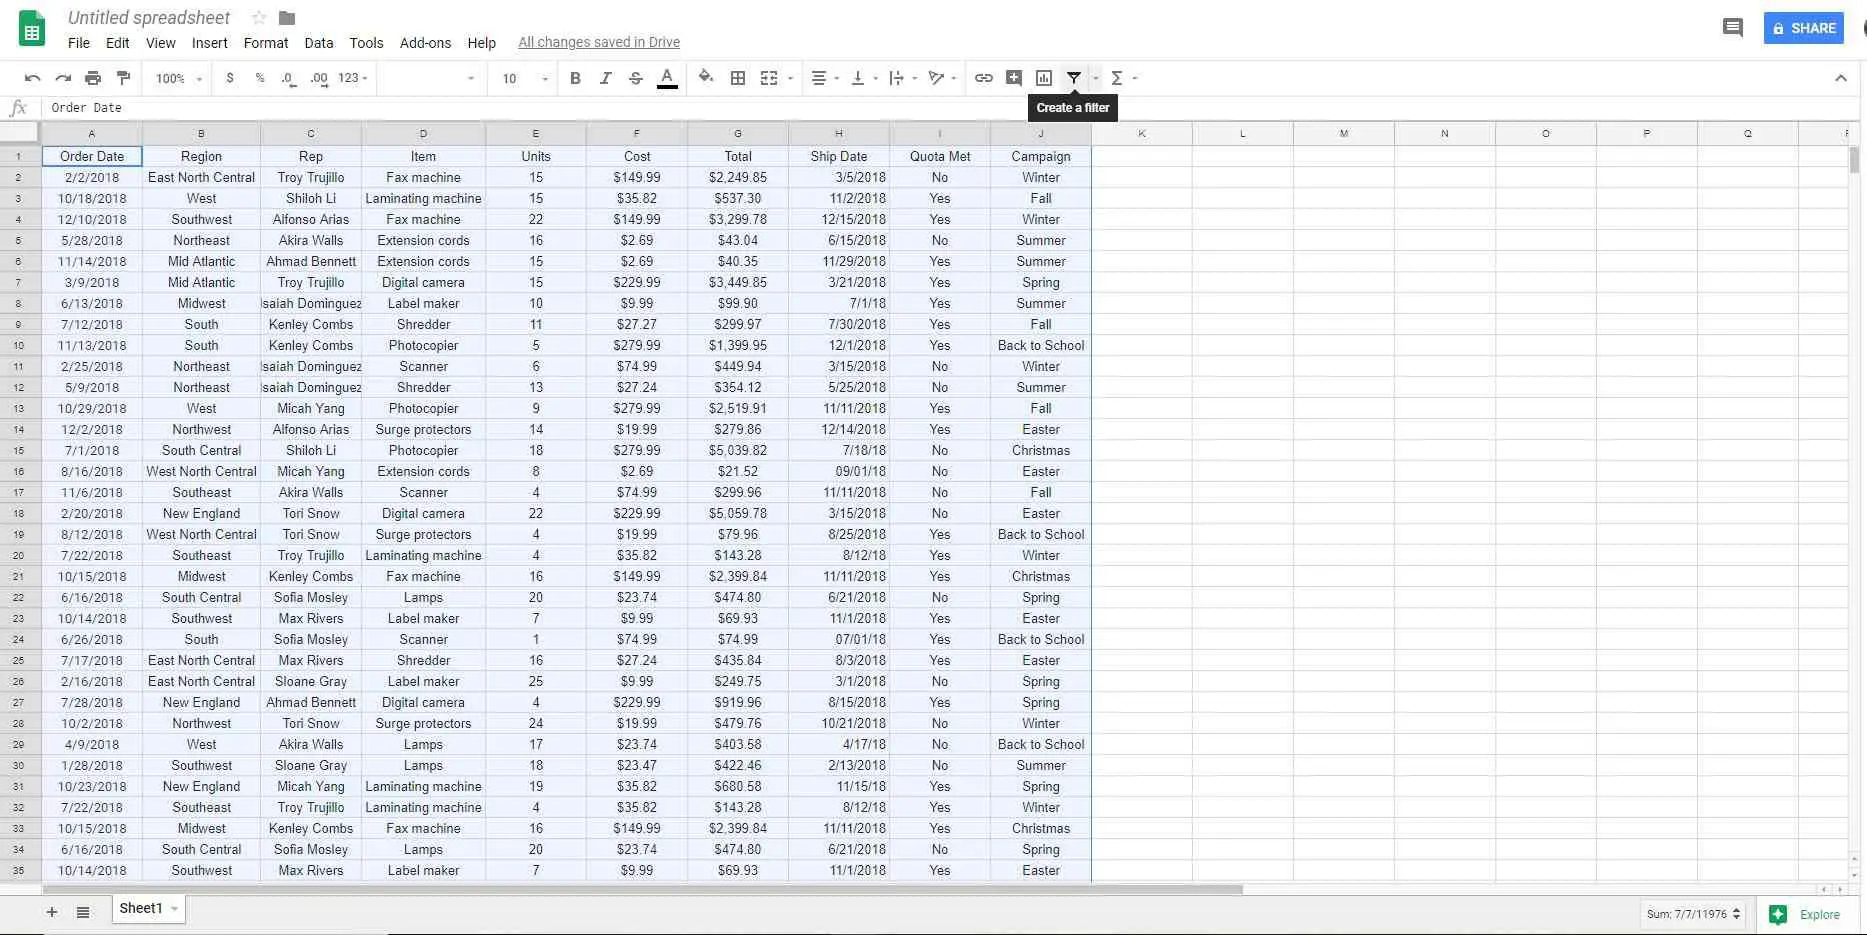 Formatar dados como uma tabela no Planilhas Google